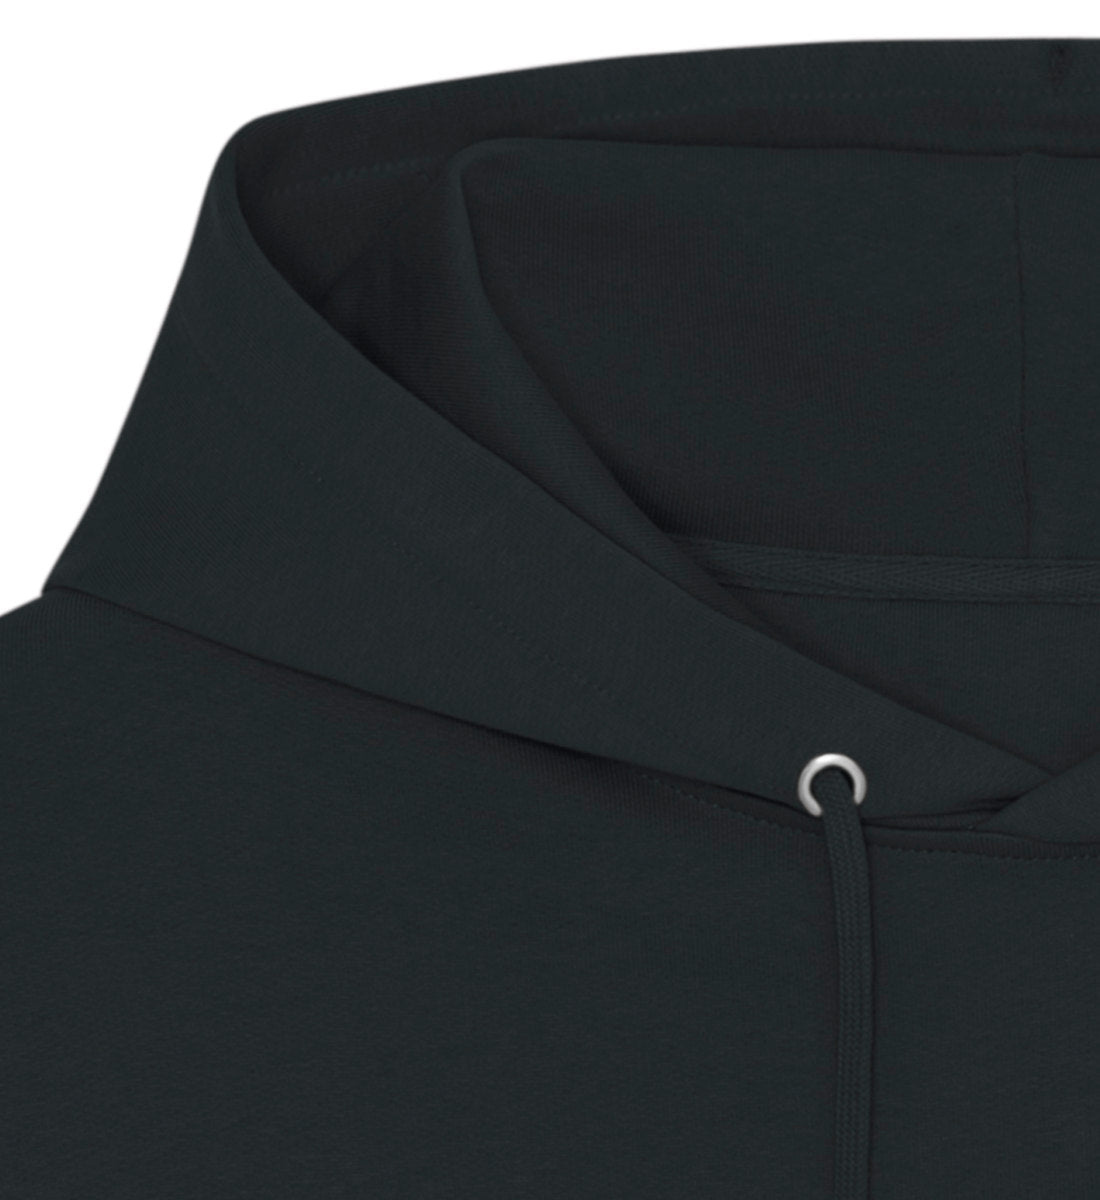 Schwarzer Oversize Hoodie Unisex für Frauen und Männer bedruckt mit dem Design der Roger Rockawoo Kollektion Dream Big